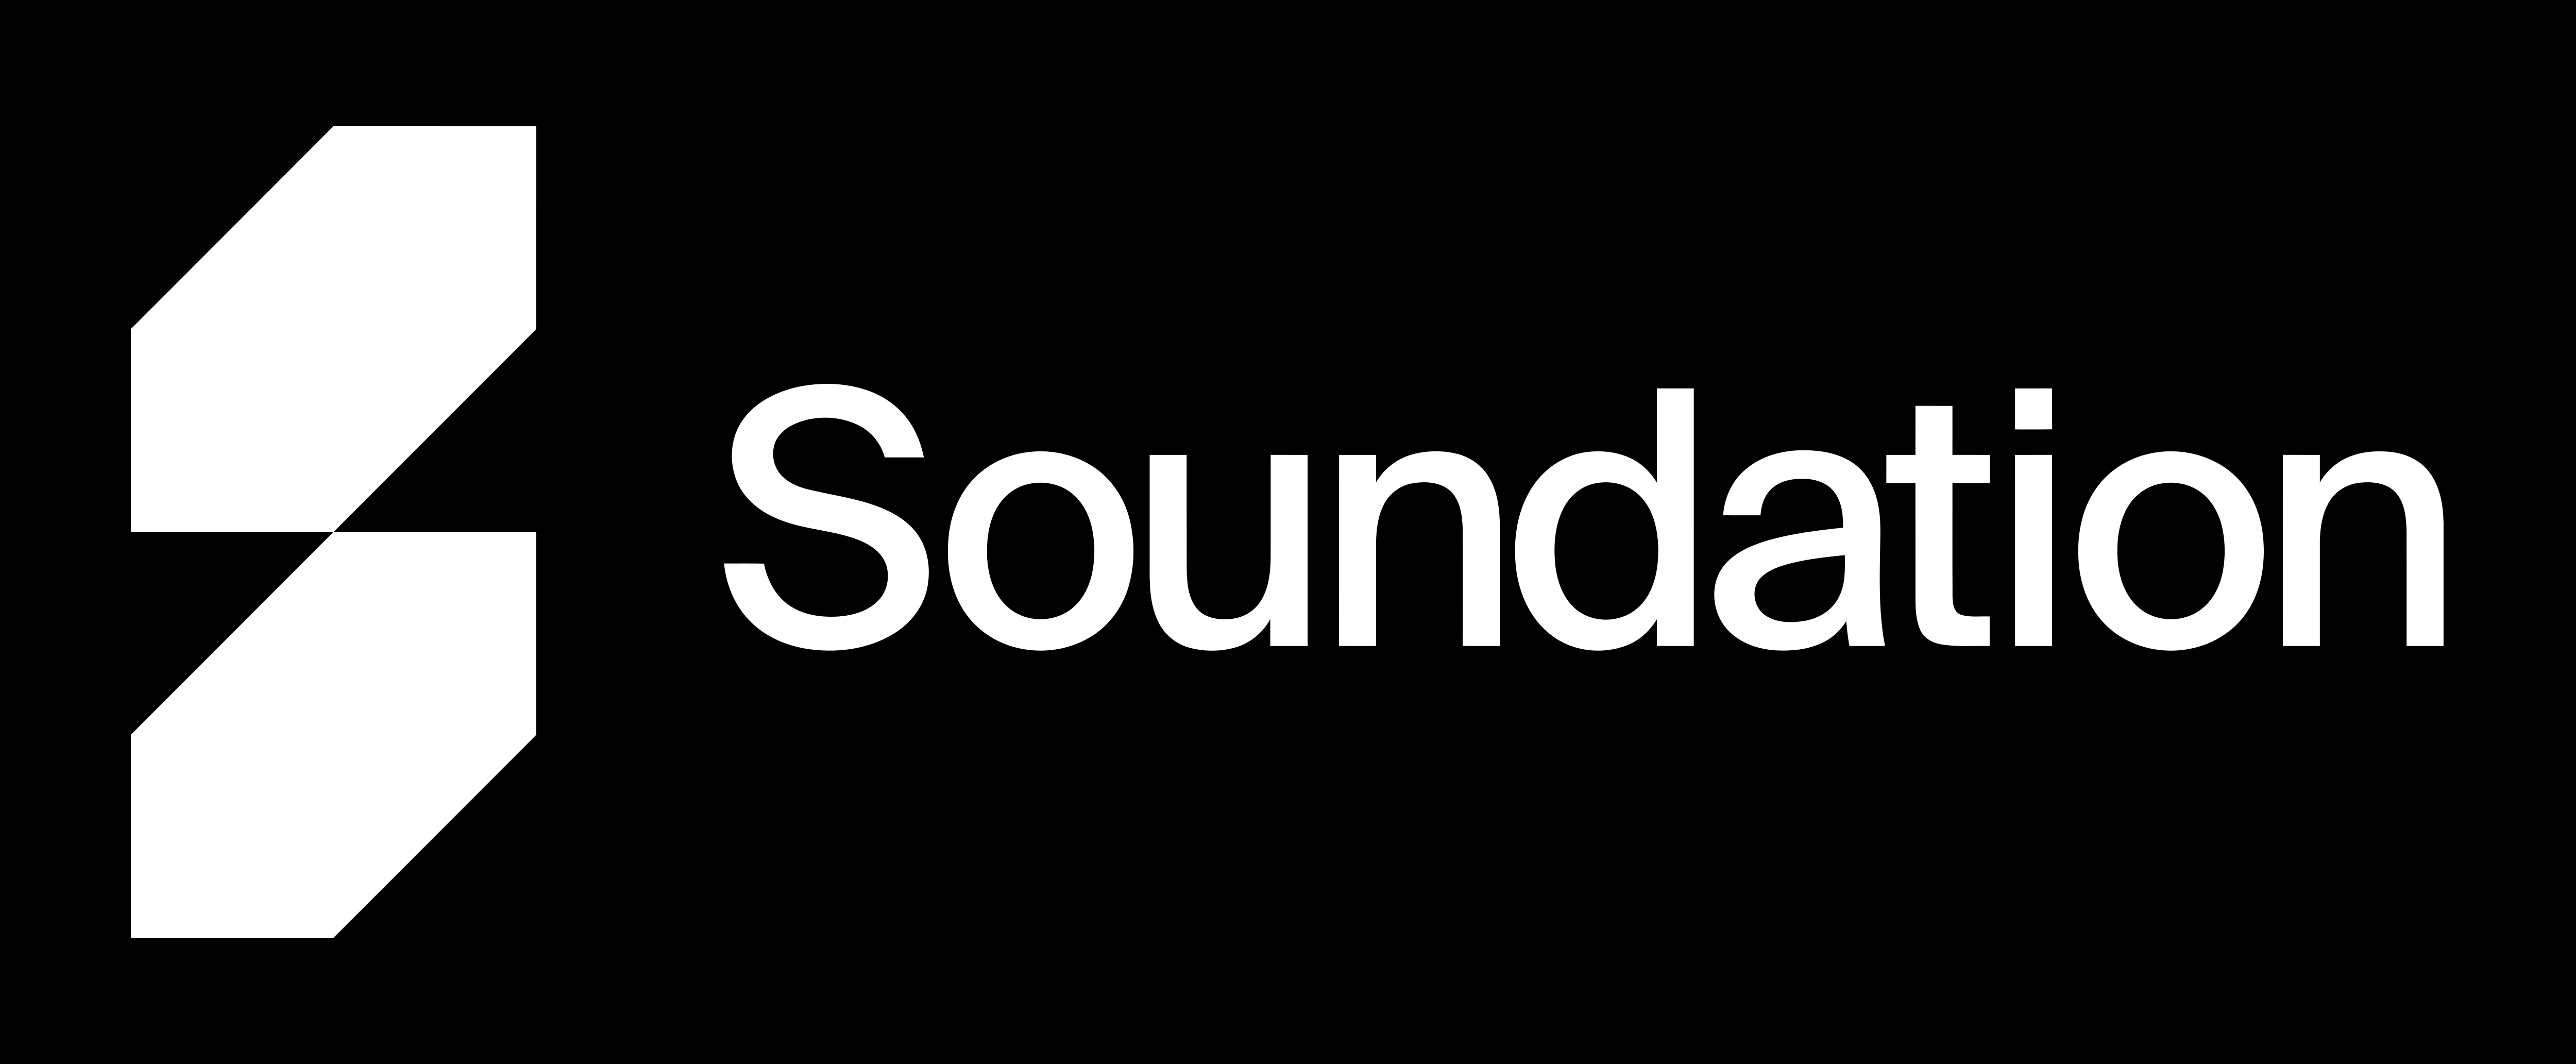 www soundation